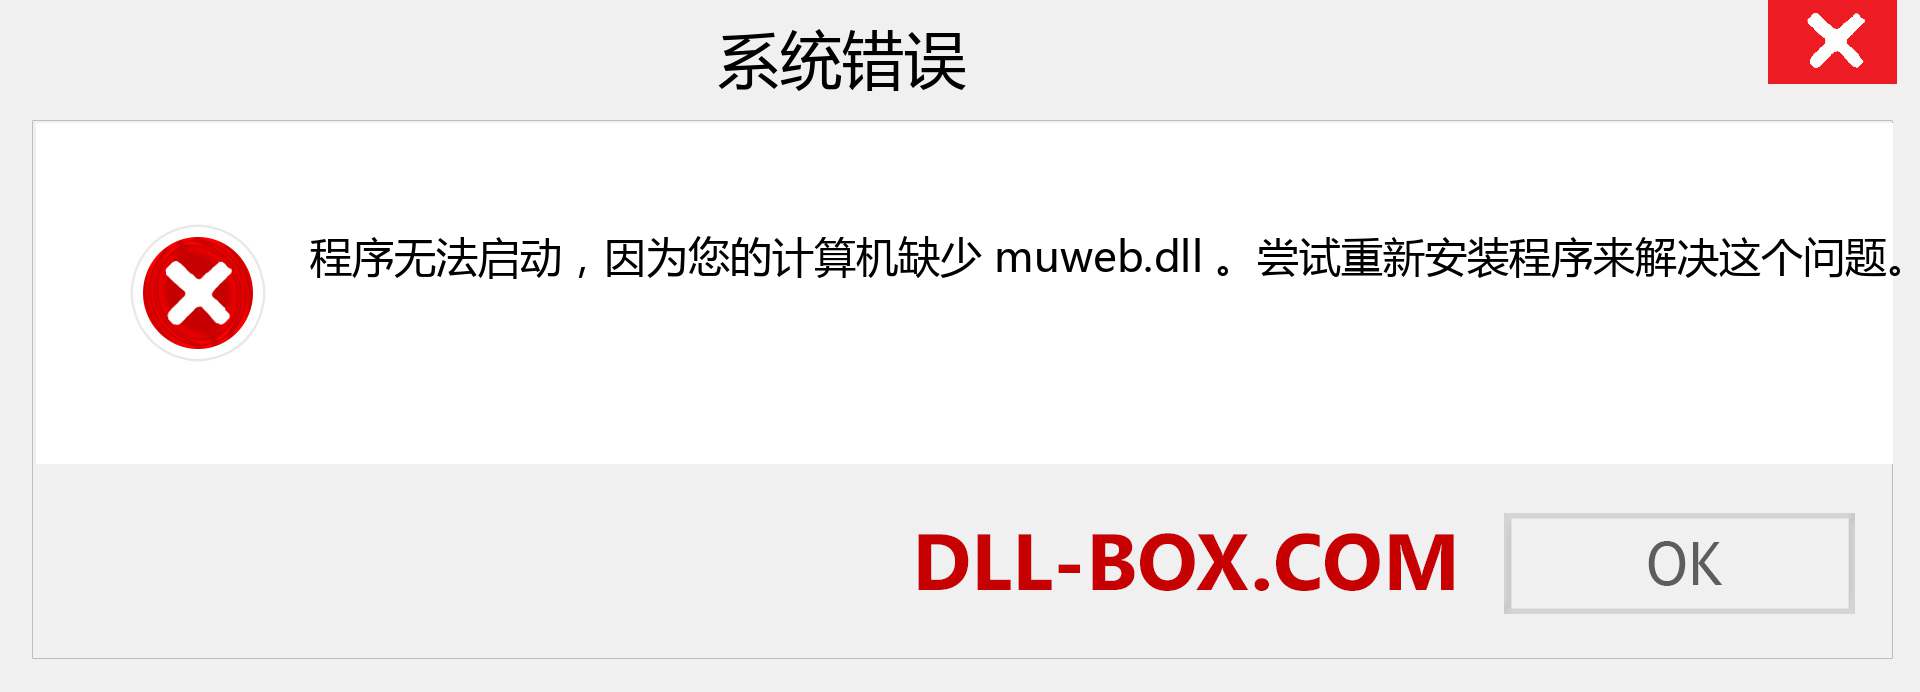 muweb.dll 文件丢失？。 适用于 Windows 7、8、10 的下载 - 修复 Windows、照片、图像上的 muweb dll 丢失错误